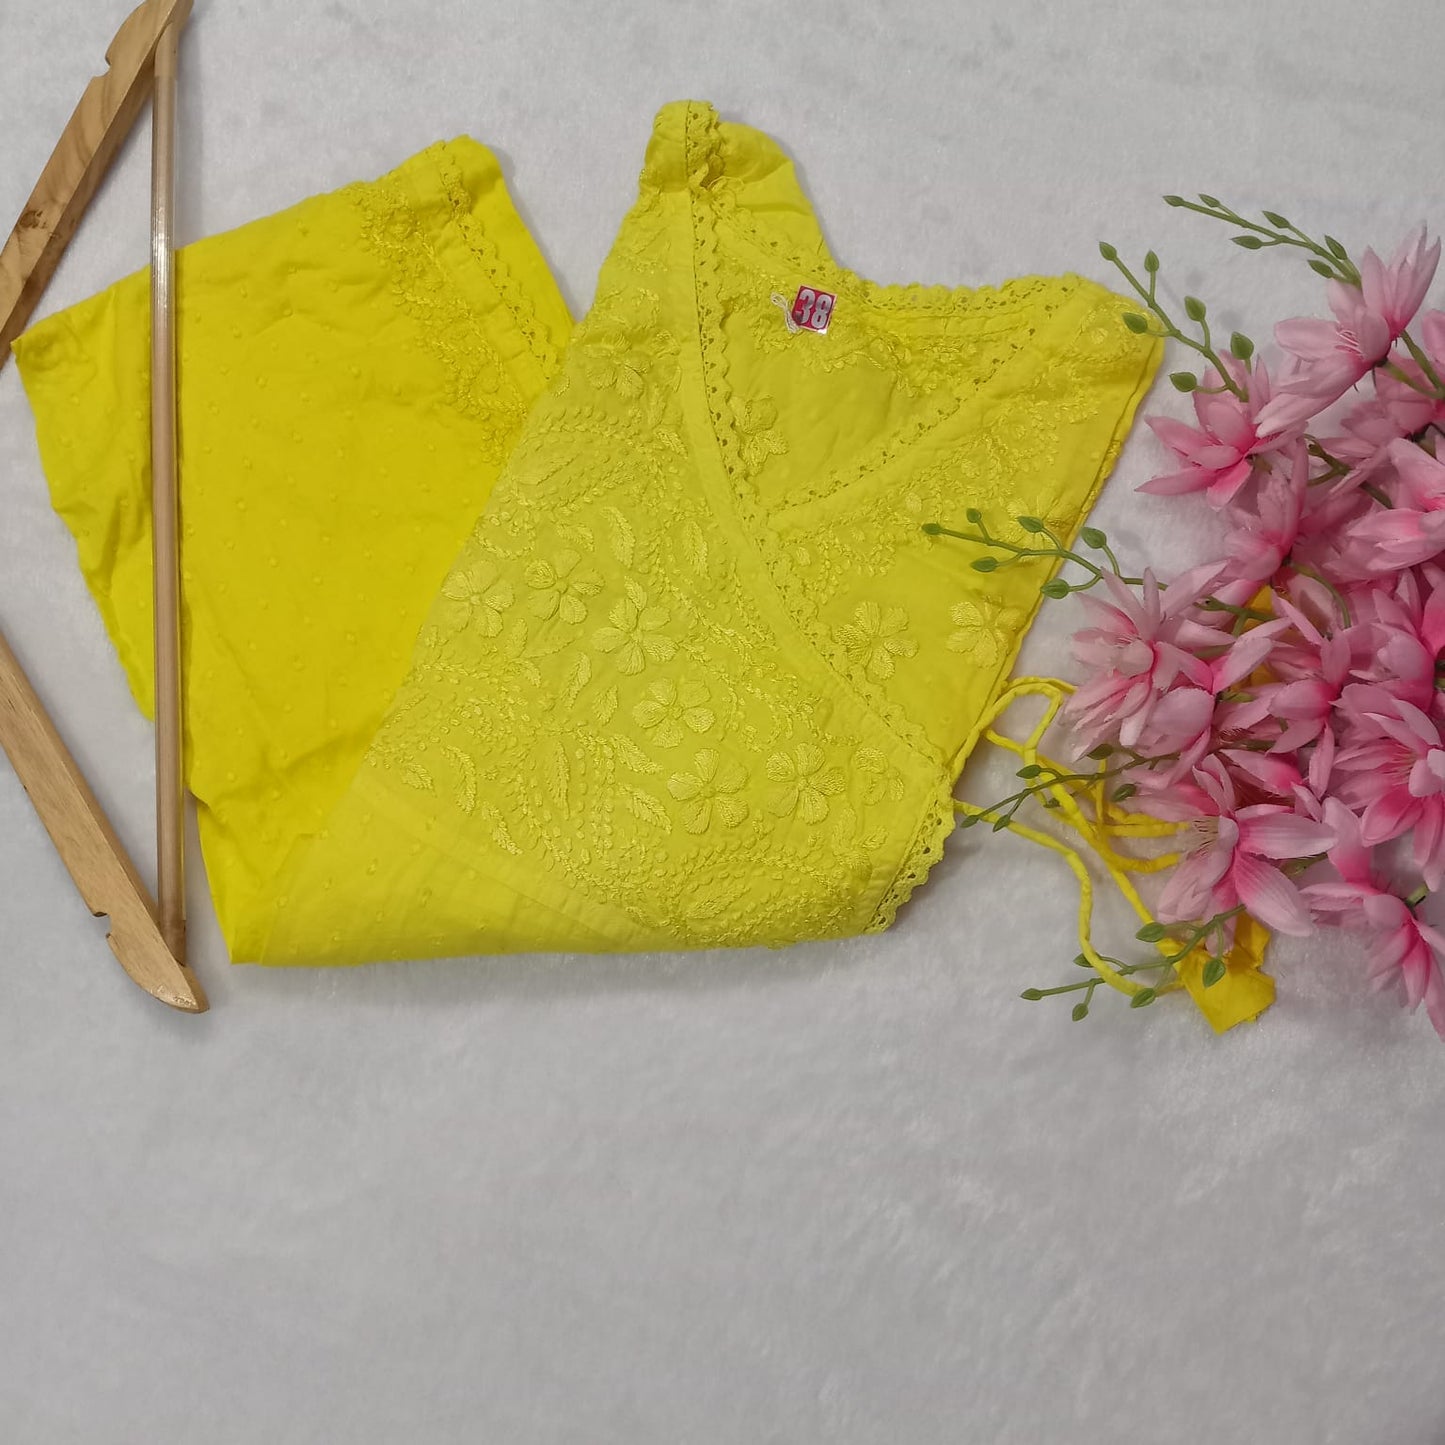 Ombre Shaded Dobby Cotton Chikankari Angarakha - Yellow Colour